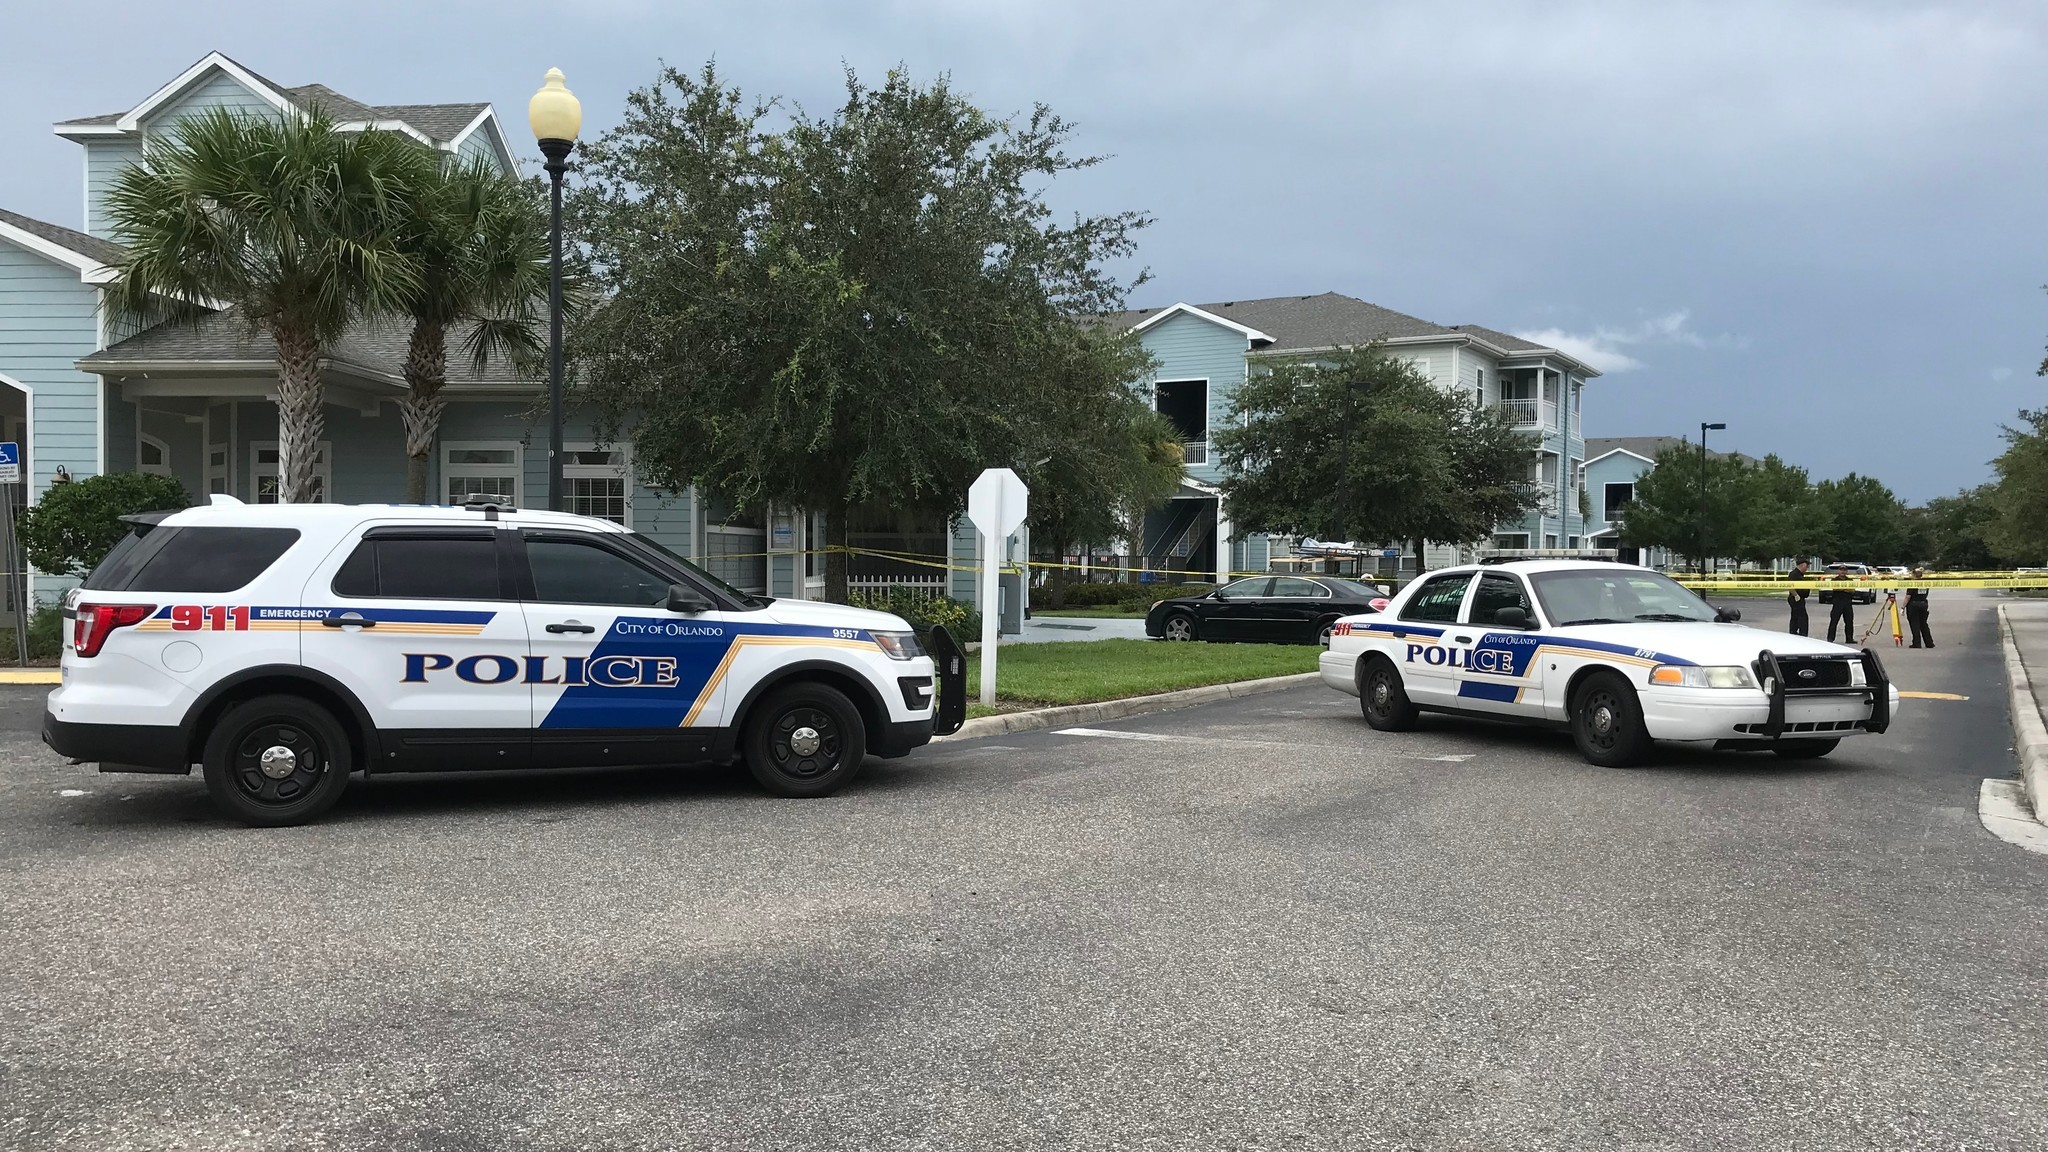 Os Ne Mill Creek Apartment Orlando Shooting 20190731 Axyn3qjx3vclbgqtcqkk44xcpq